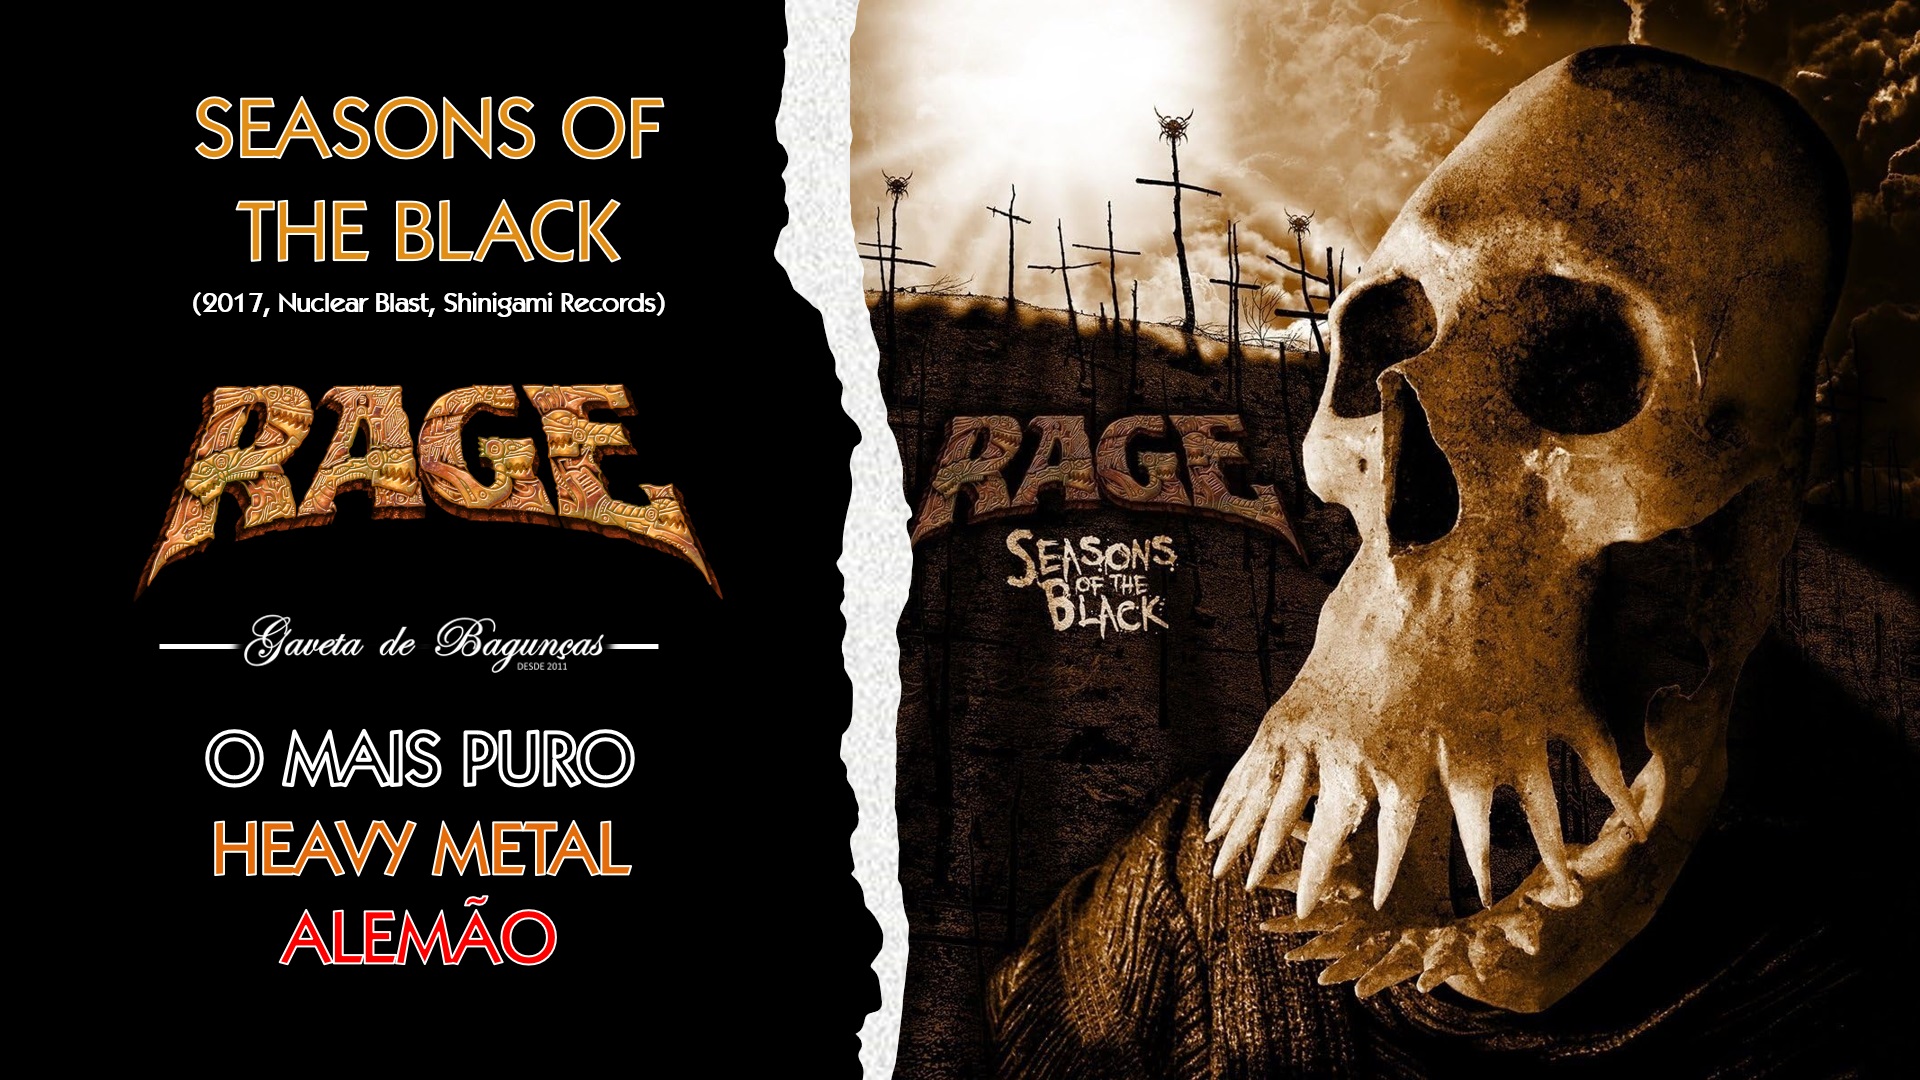 A lendária banda alemã de heavy metal Rage apresenta seu vigésimo terceiro álbum de estúdio, "Seasons of the Black", reforçando o fato de estar numa de suas melhores e mais prolíficas fases da carreira.